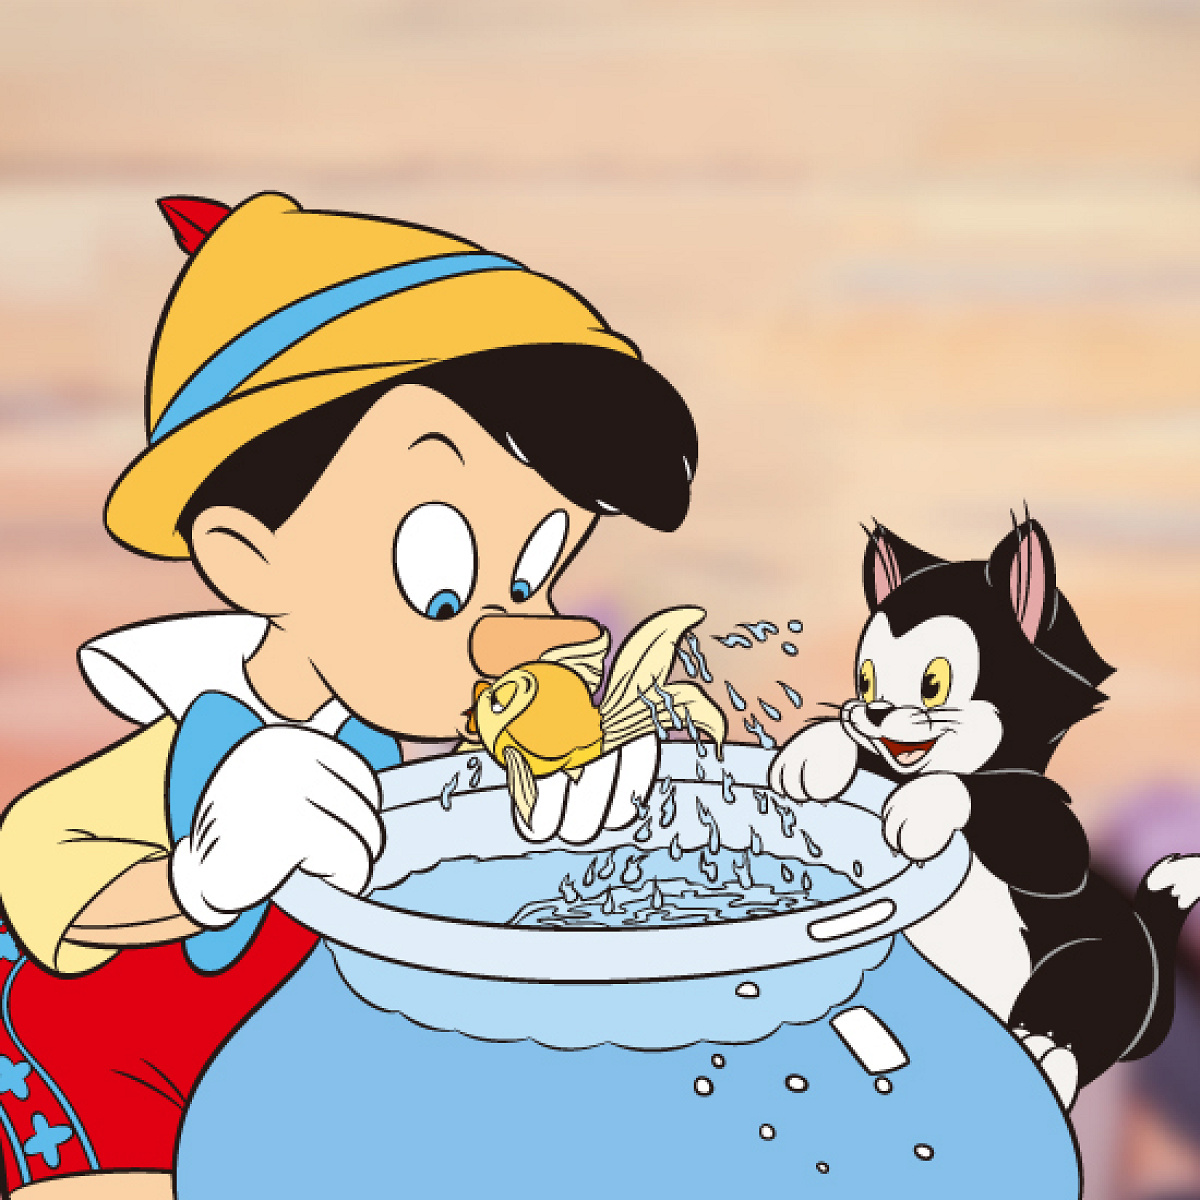 ピノキオとクレオとフィガロ